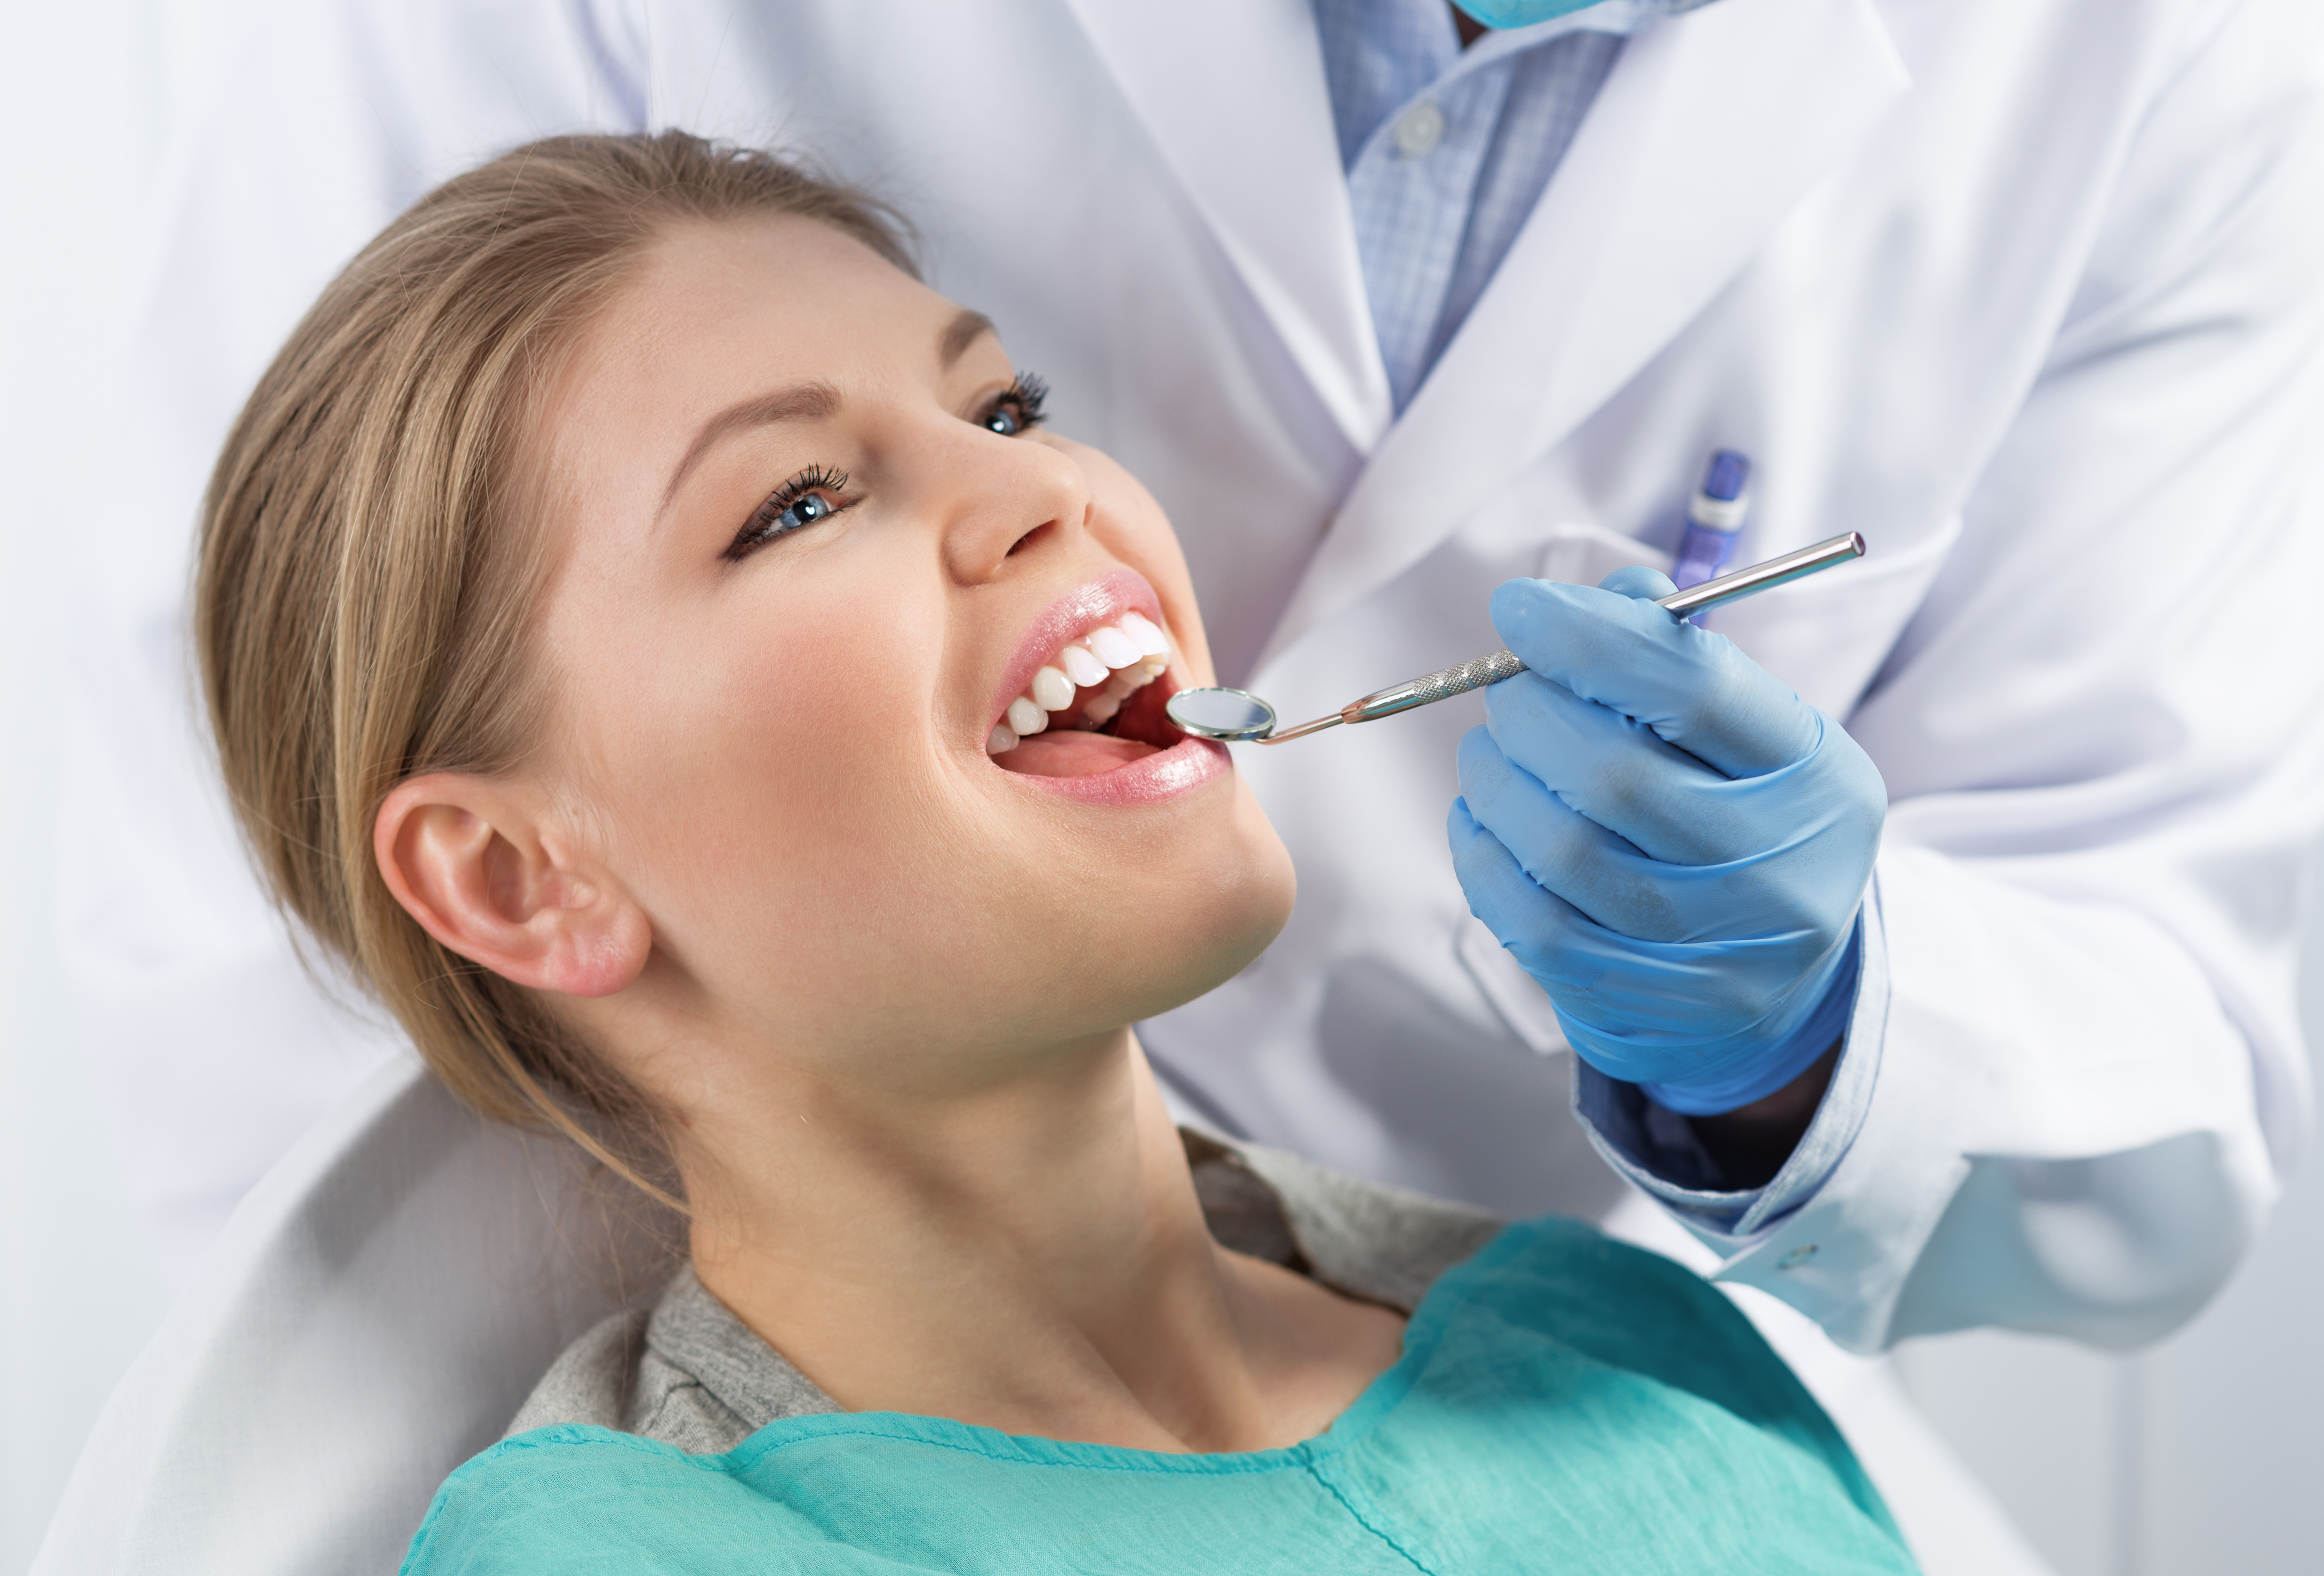 Лечение полости рта и зубов. Зубы стоматолог. Осмотр стоматолога. Стоматолог пародонтолог.